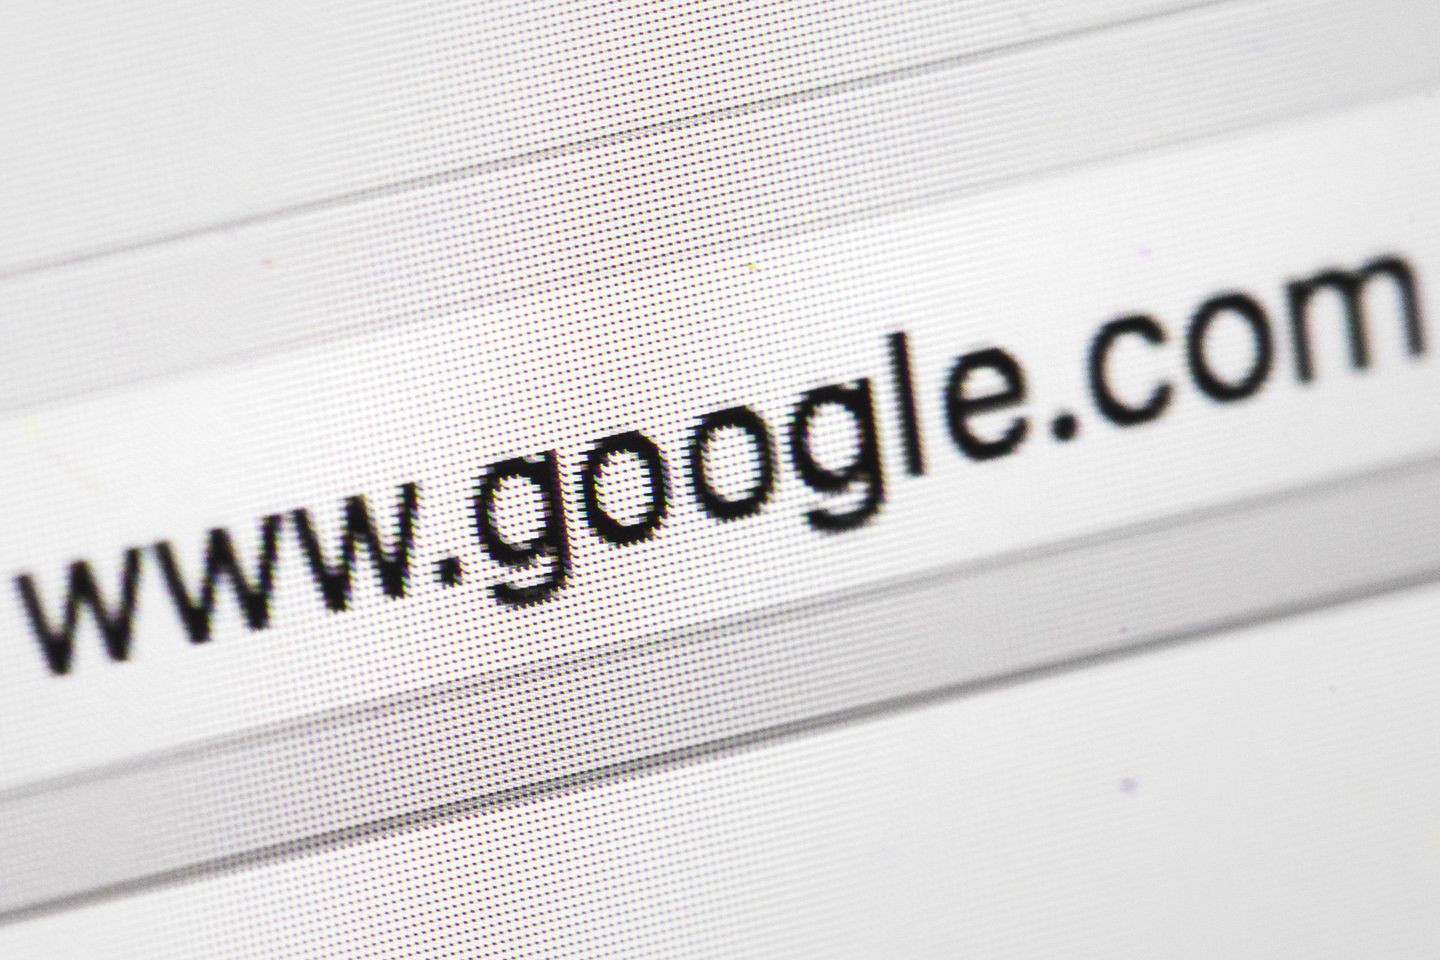 Google axing 12,000 jobs as tech industry layoffs widen